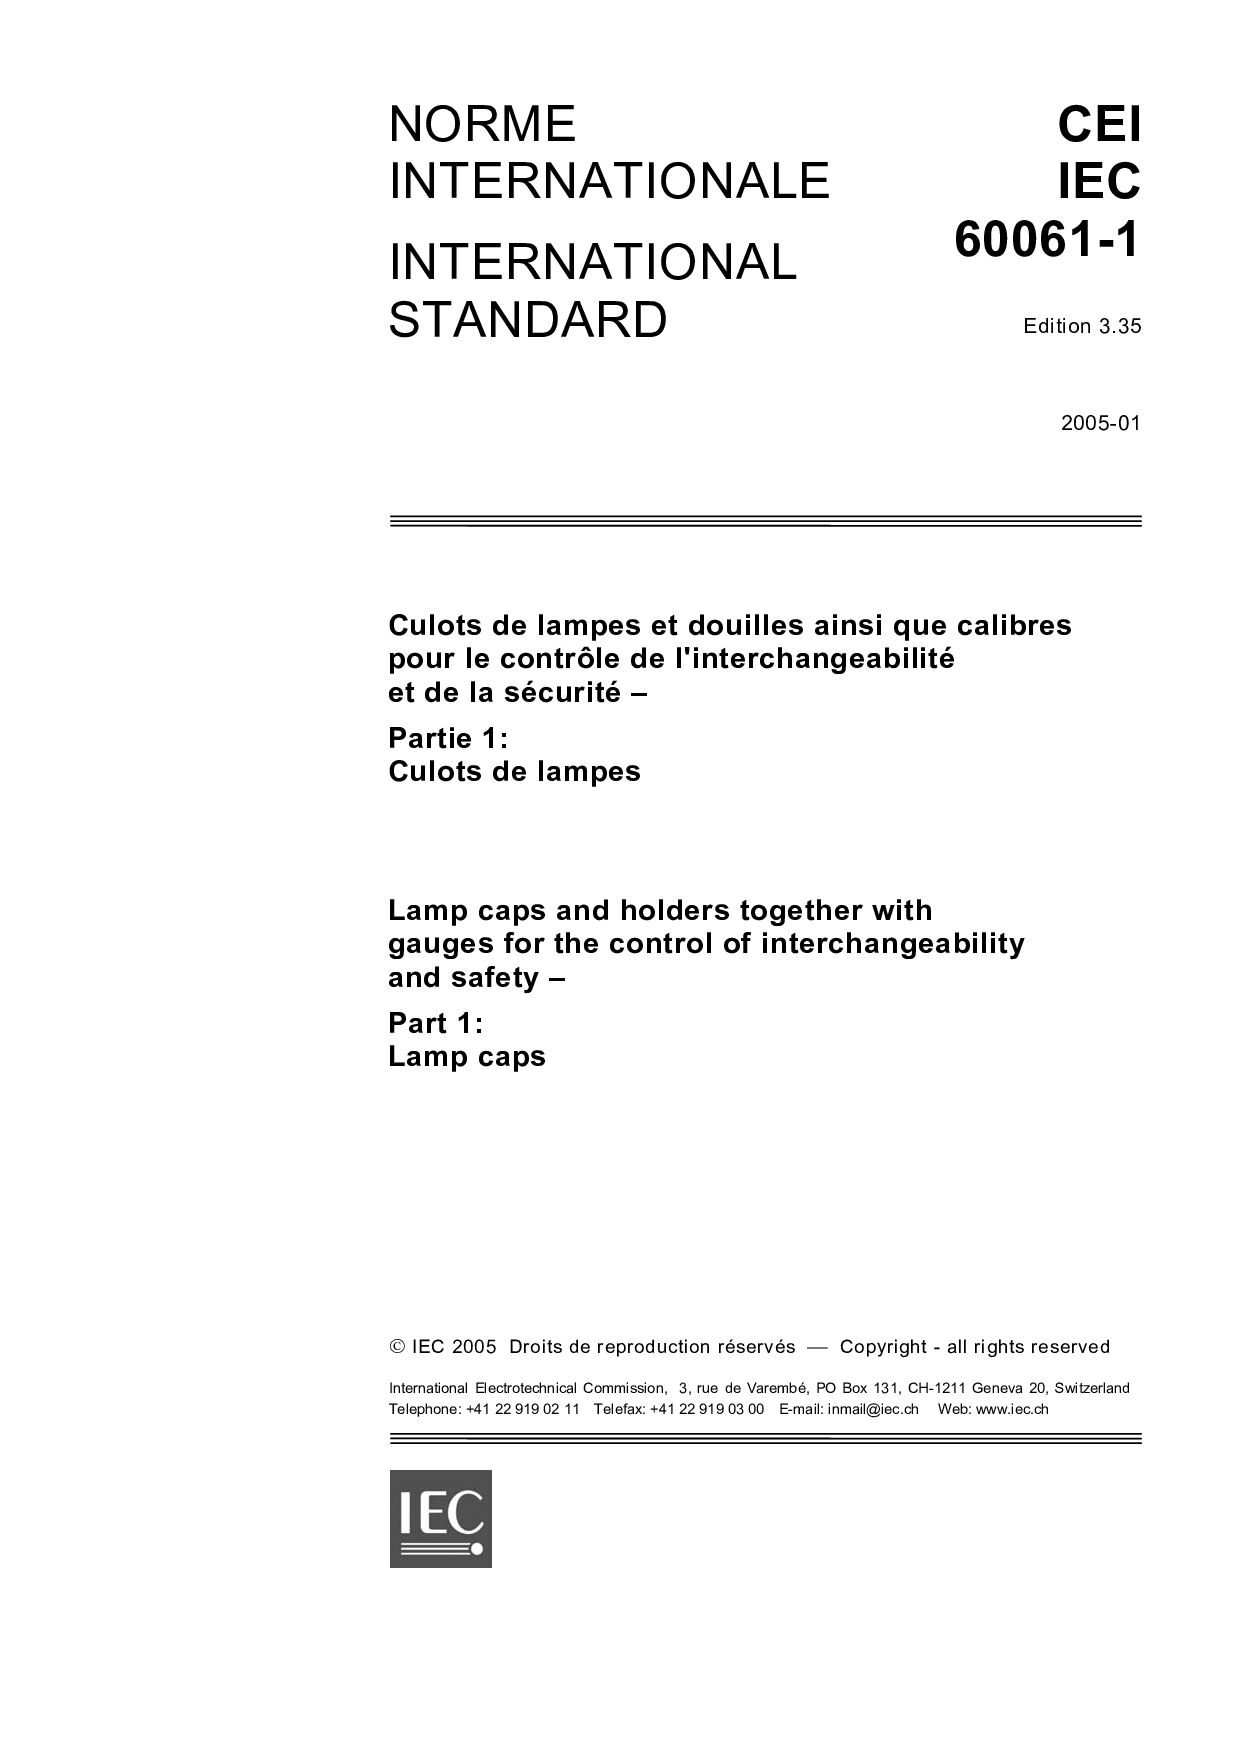 IEC 60061-1:2005